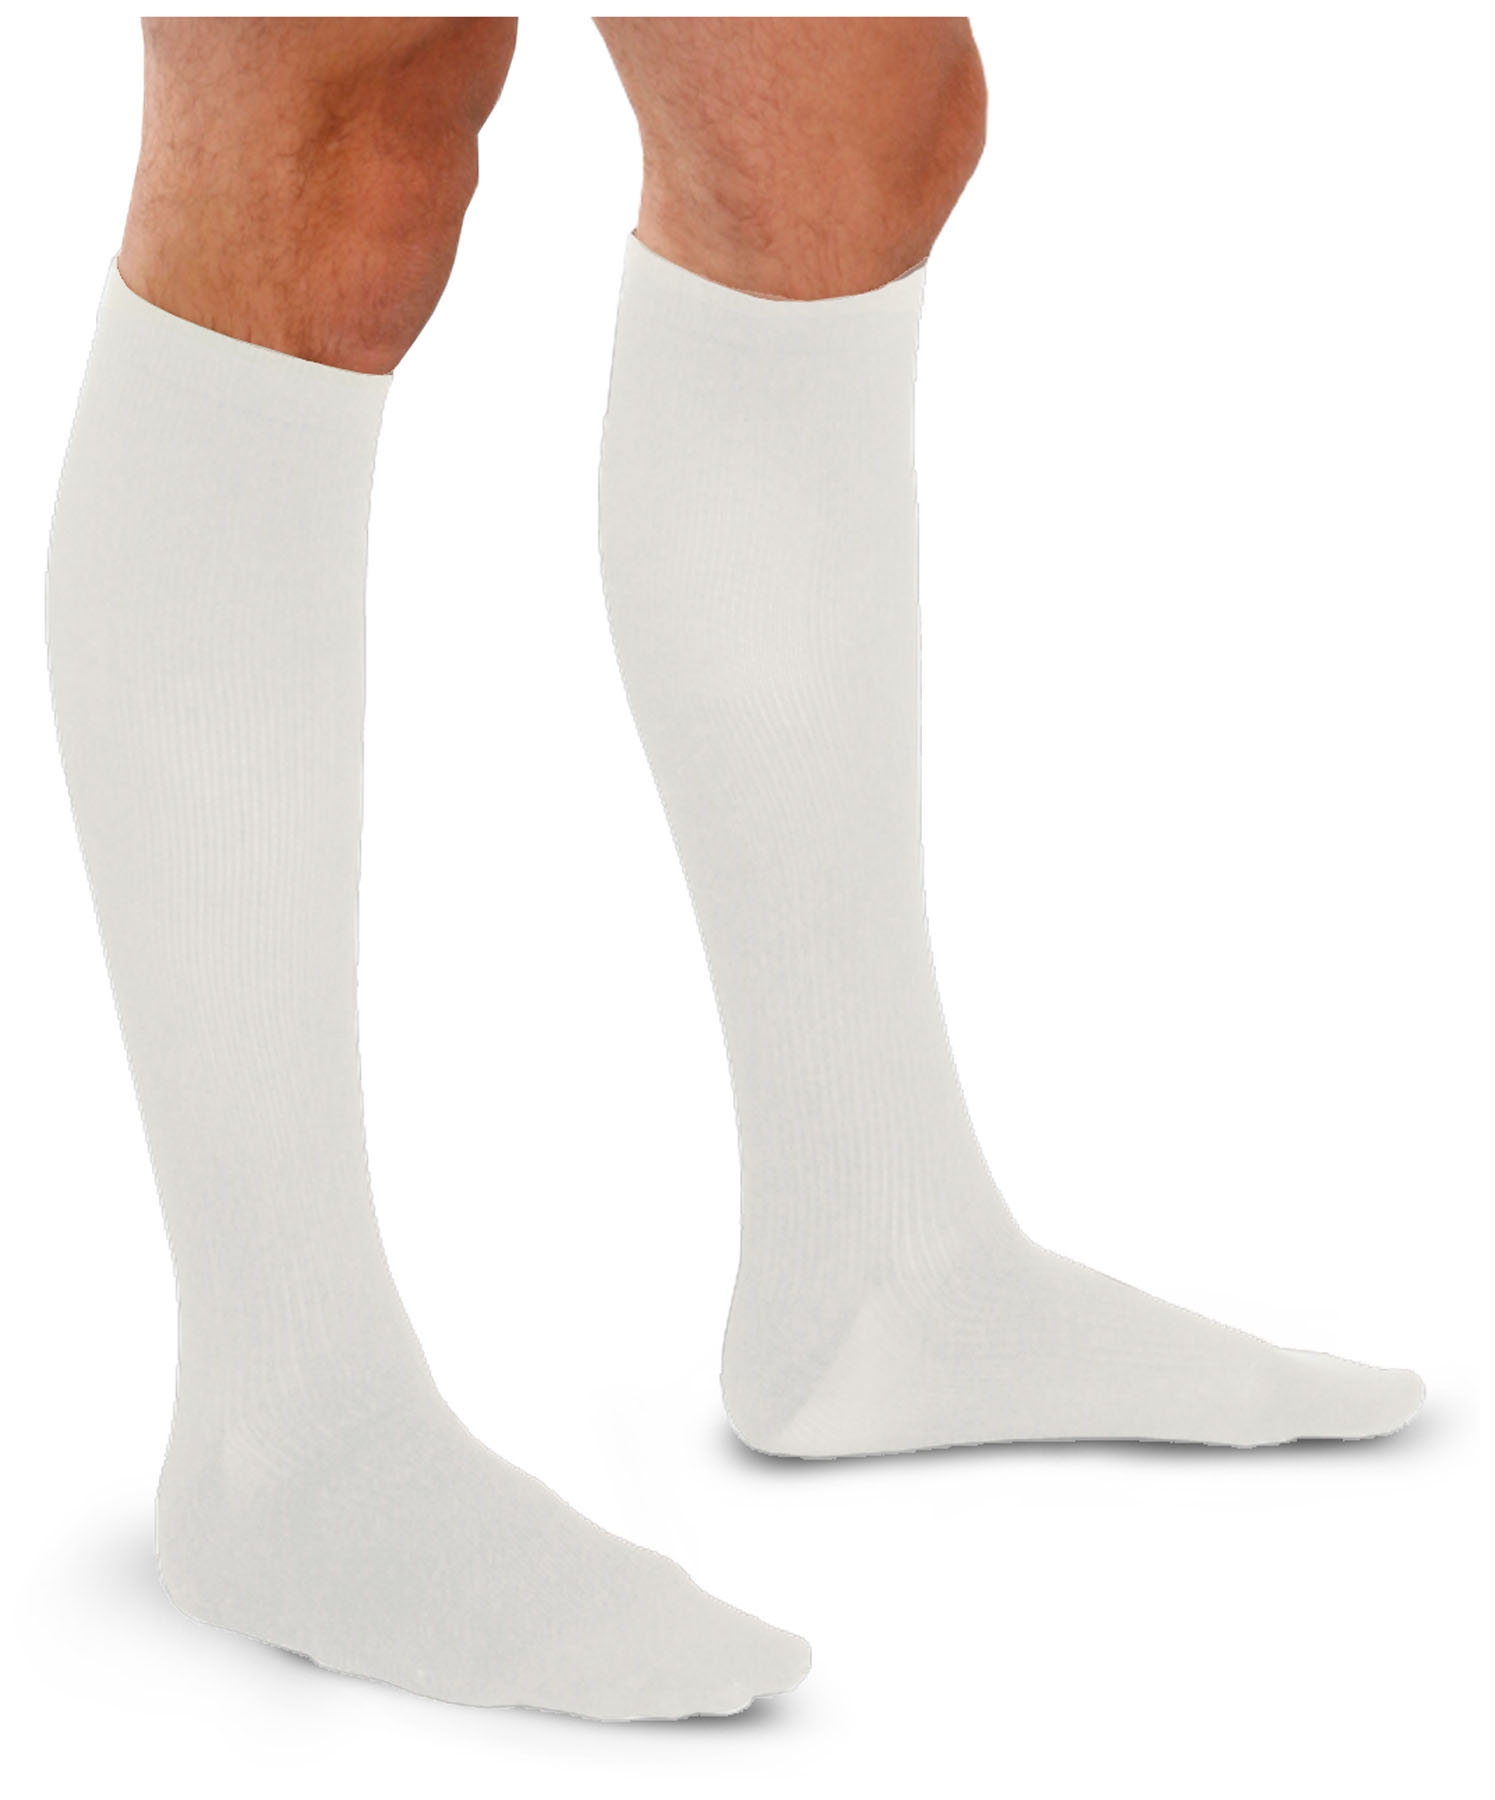 Cherokee Hosiery 30-40 Hg Men's Trouser Socks TF693